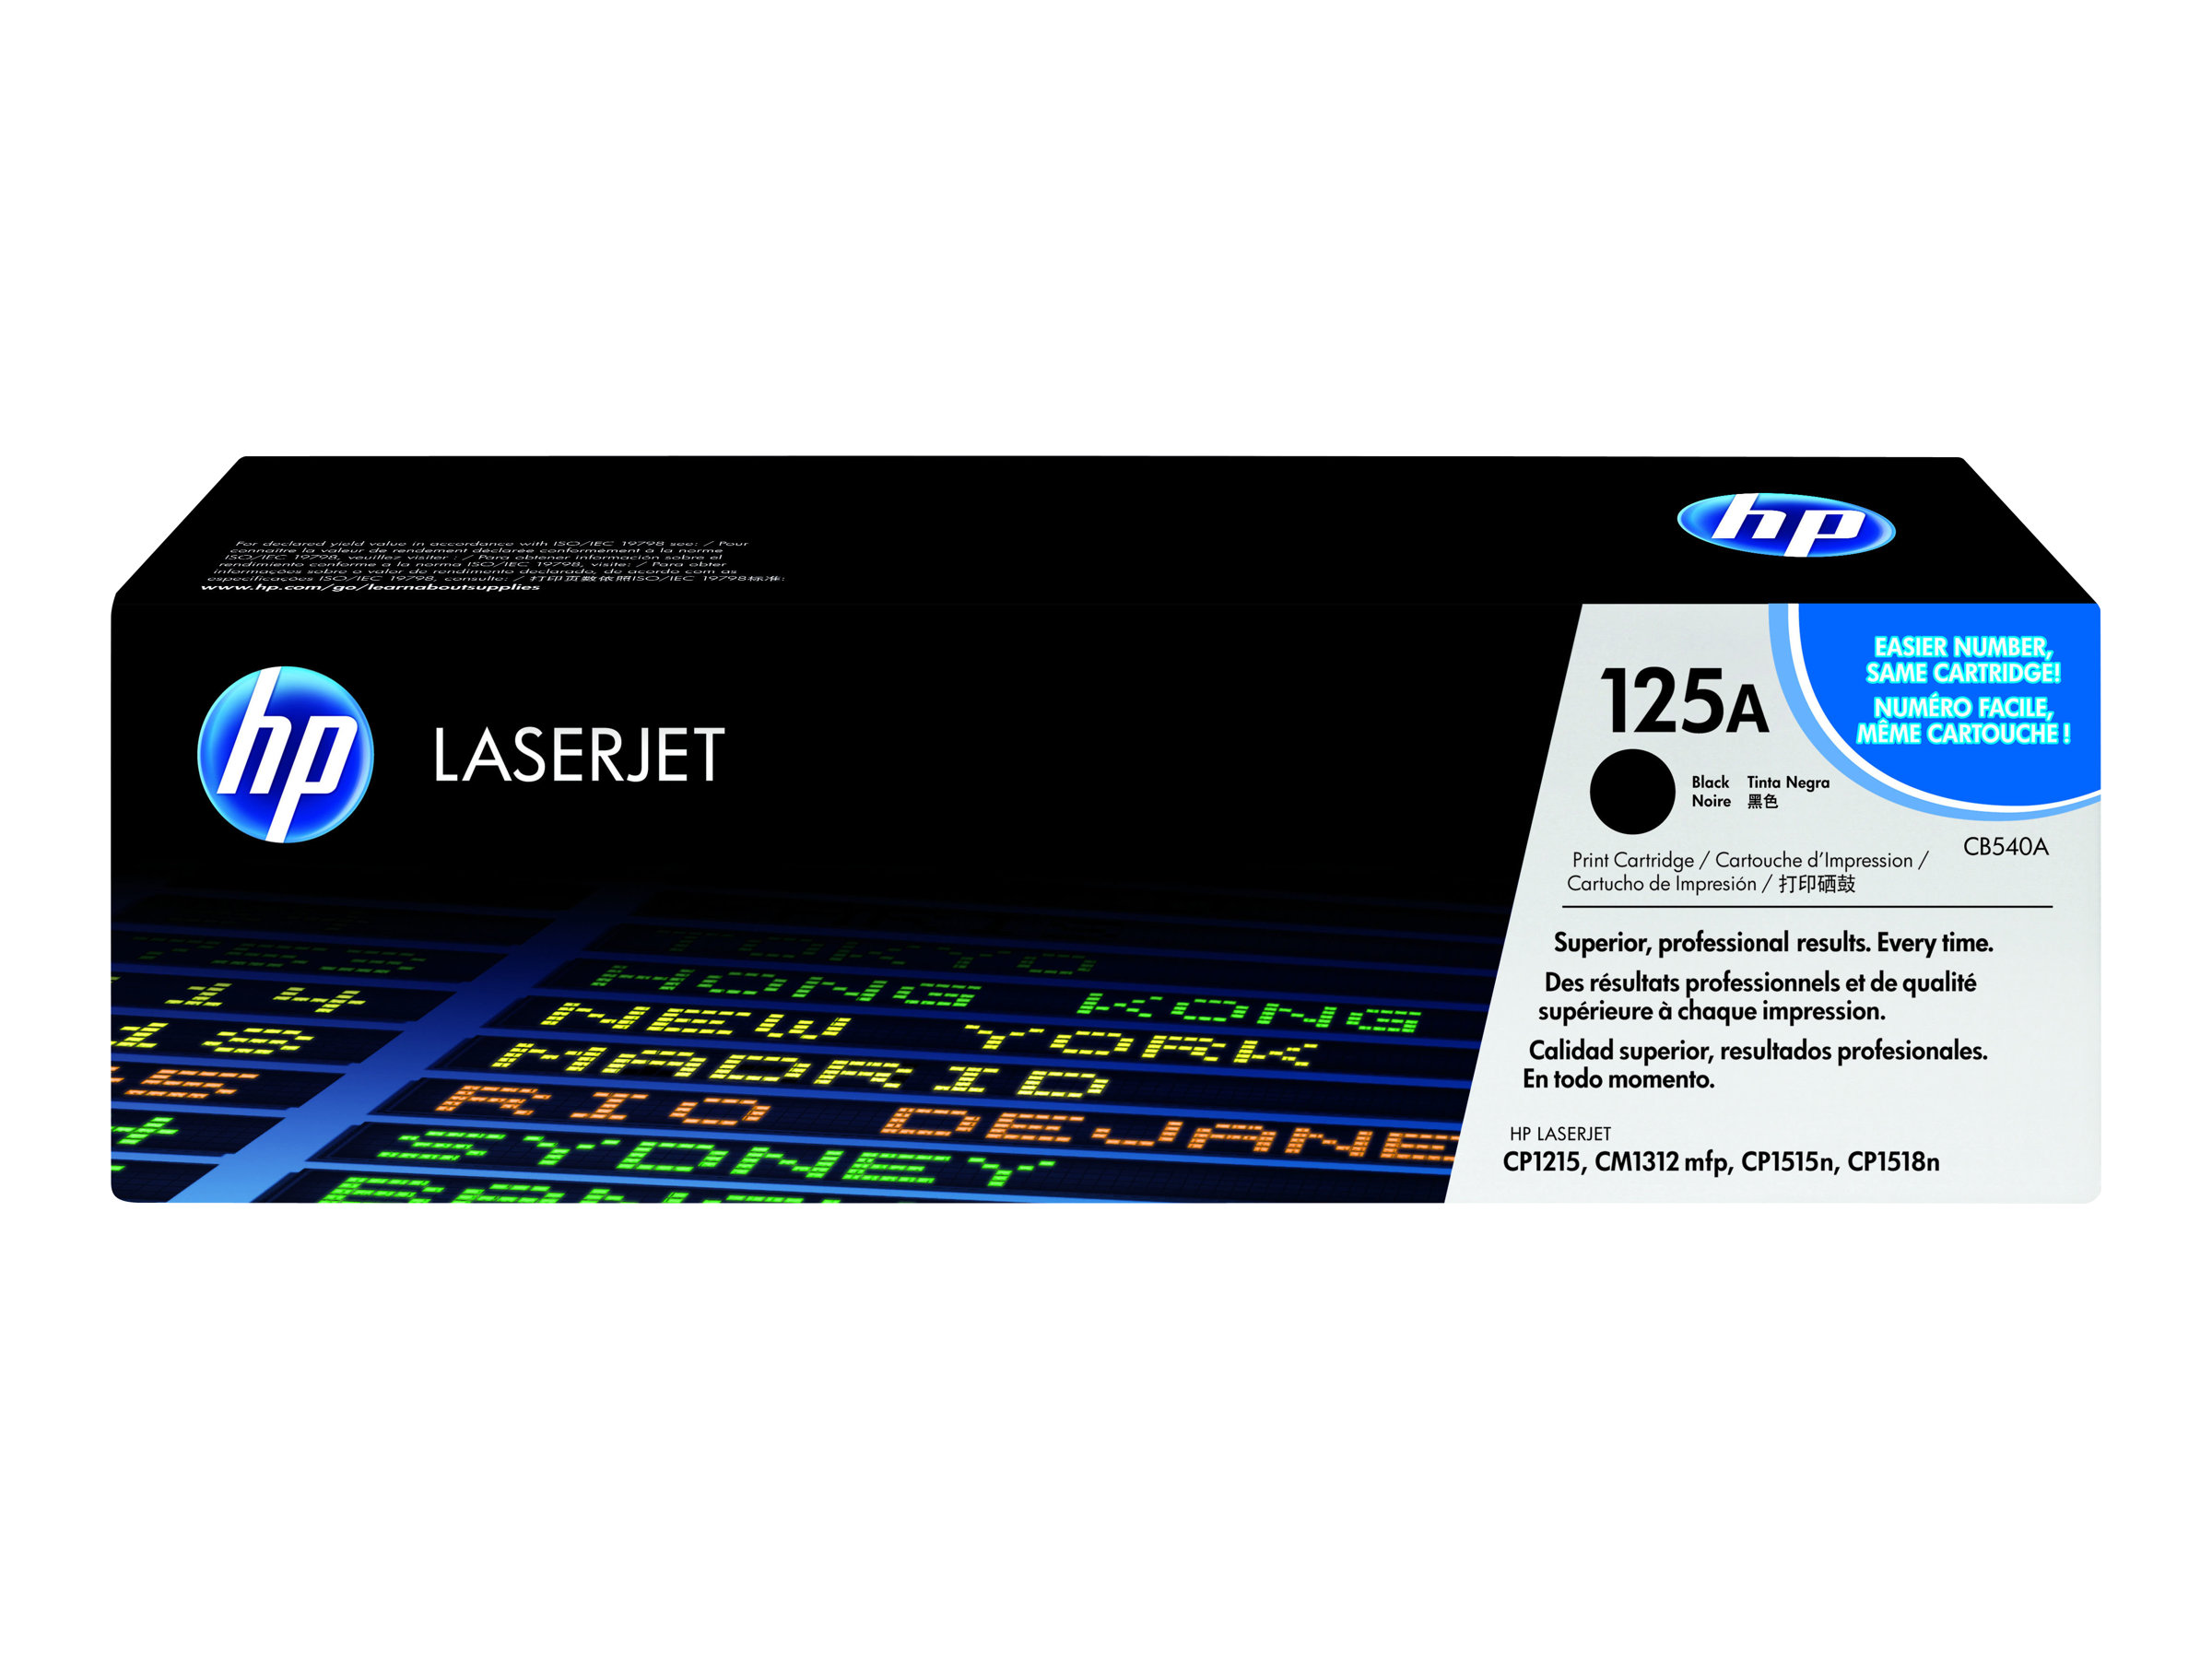 Toner CB540A / schwarz / bis zu 2200 Seiten / für HP Color LaserJet CP 1215/ CP 1515/ CP 1518